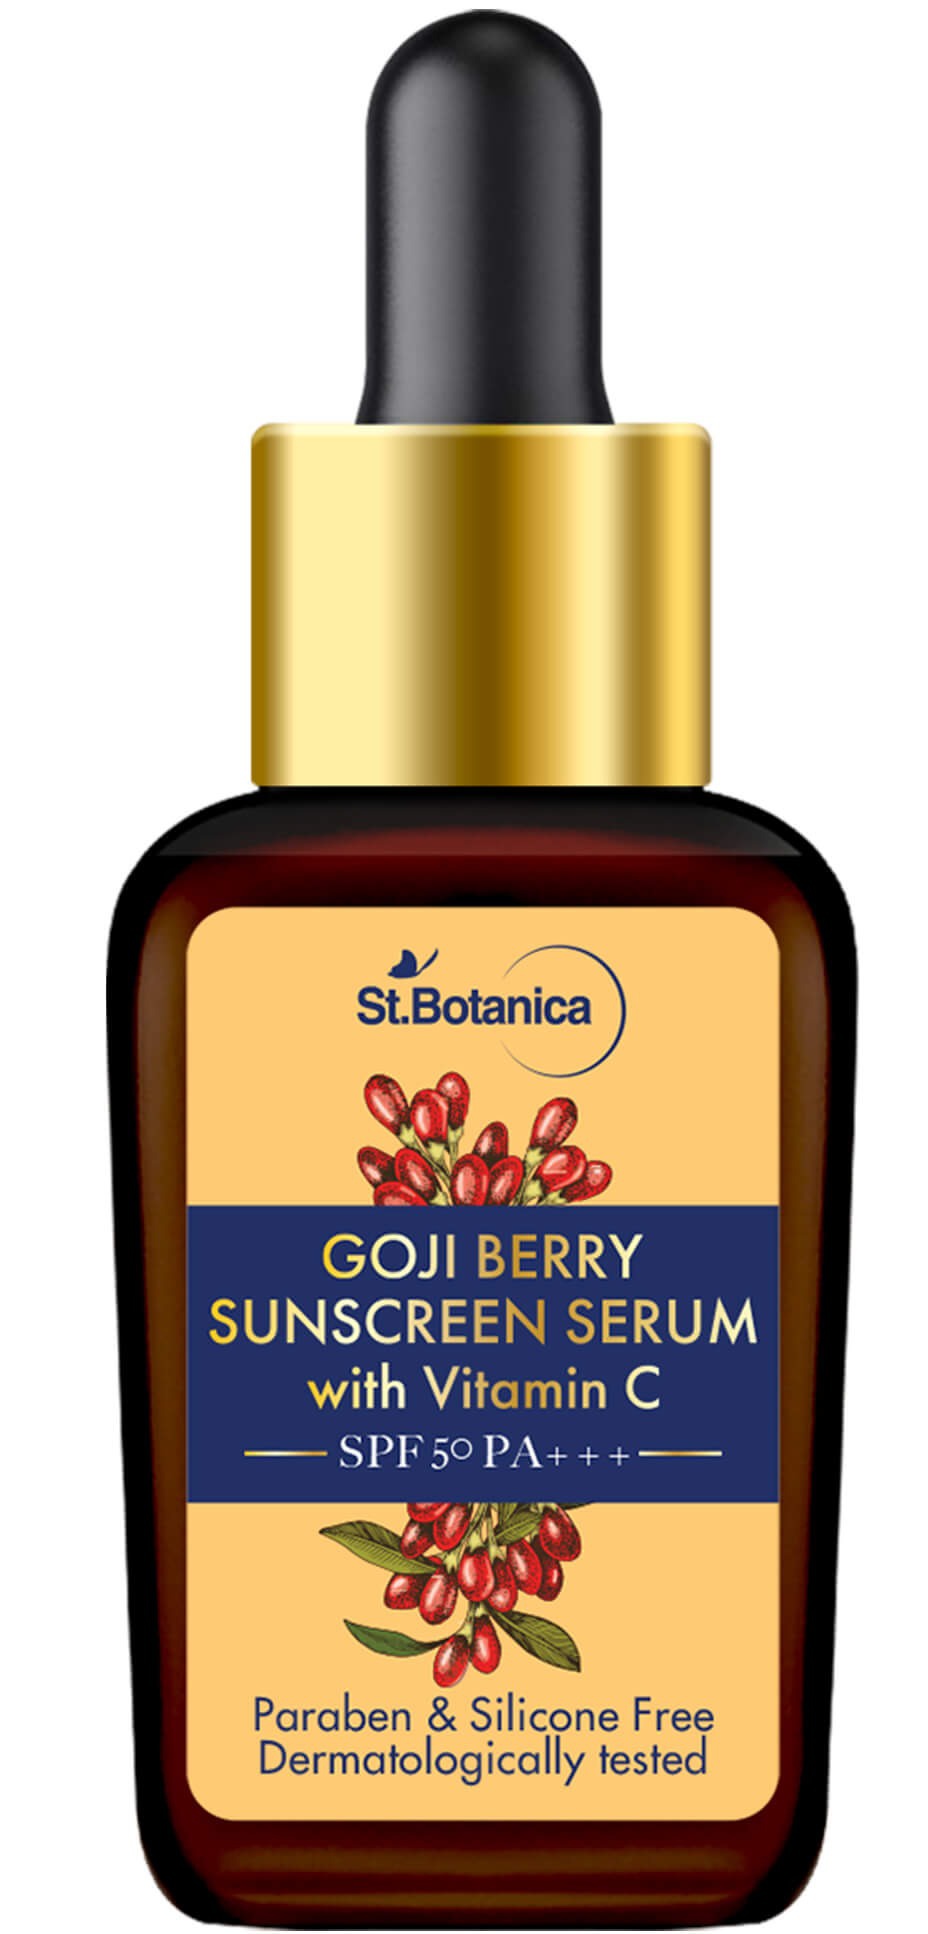 St. Botanica Goji Beery Sunscreen Serum